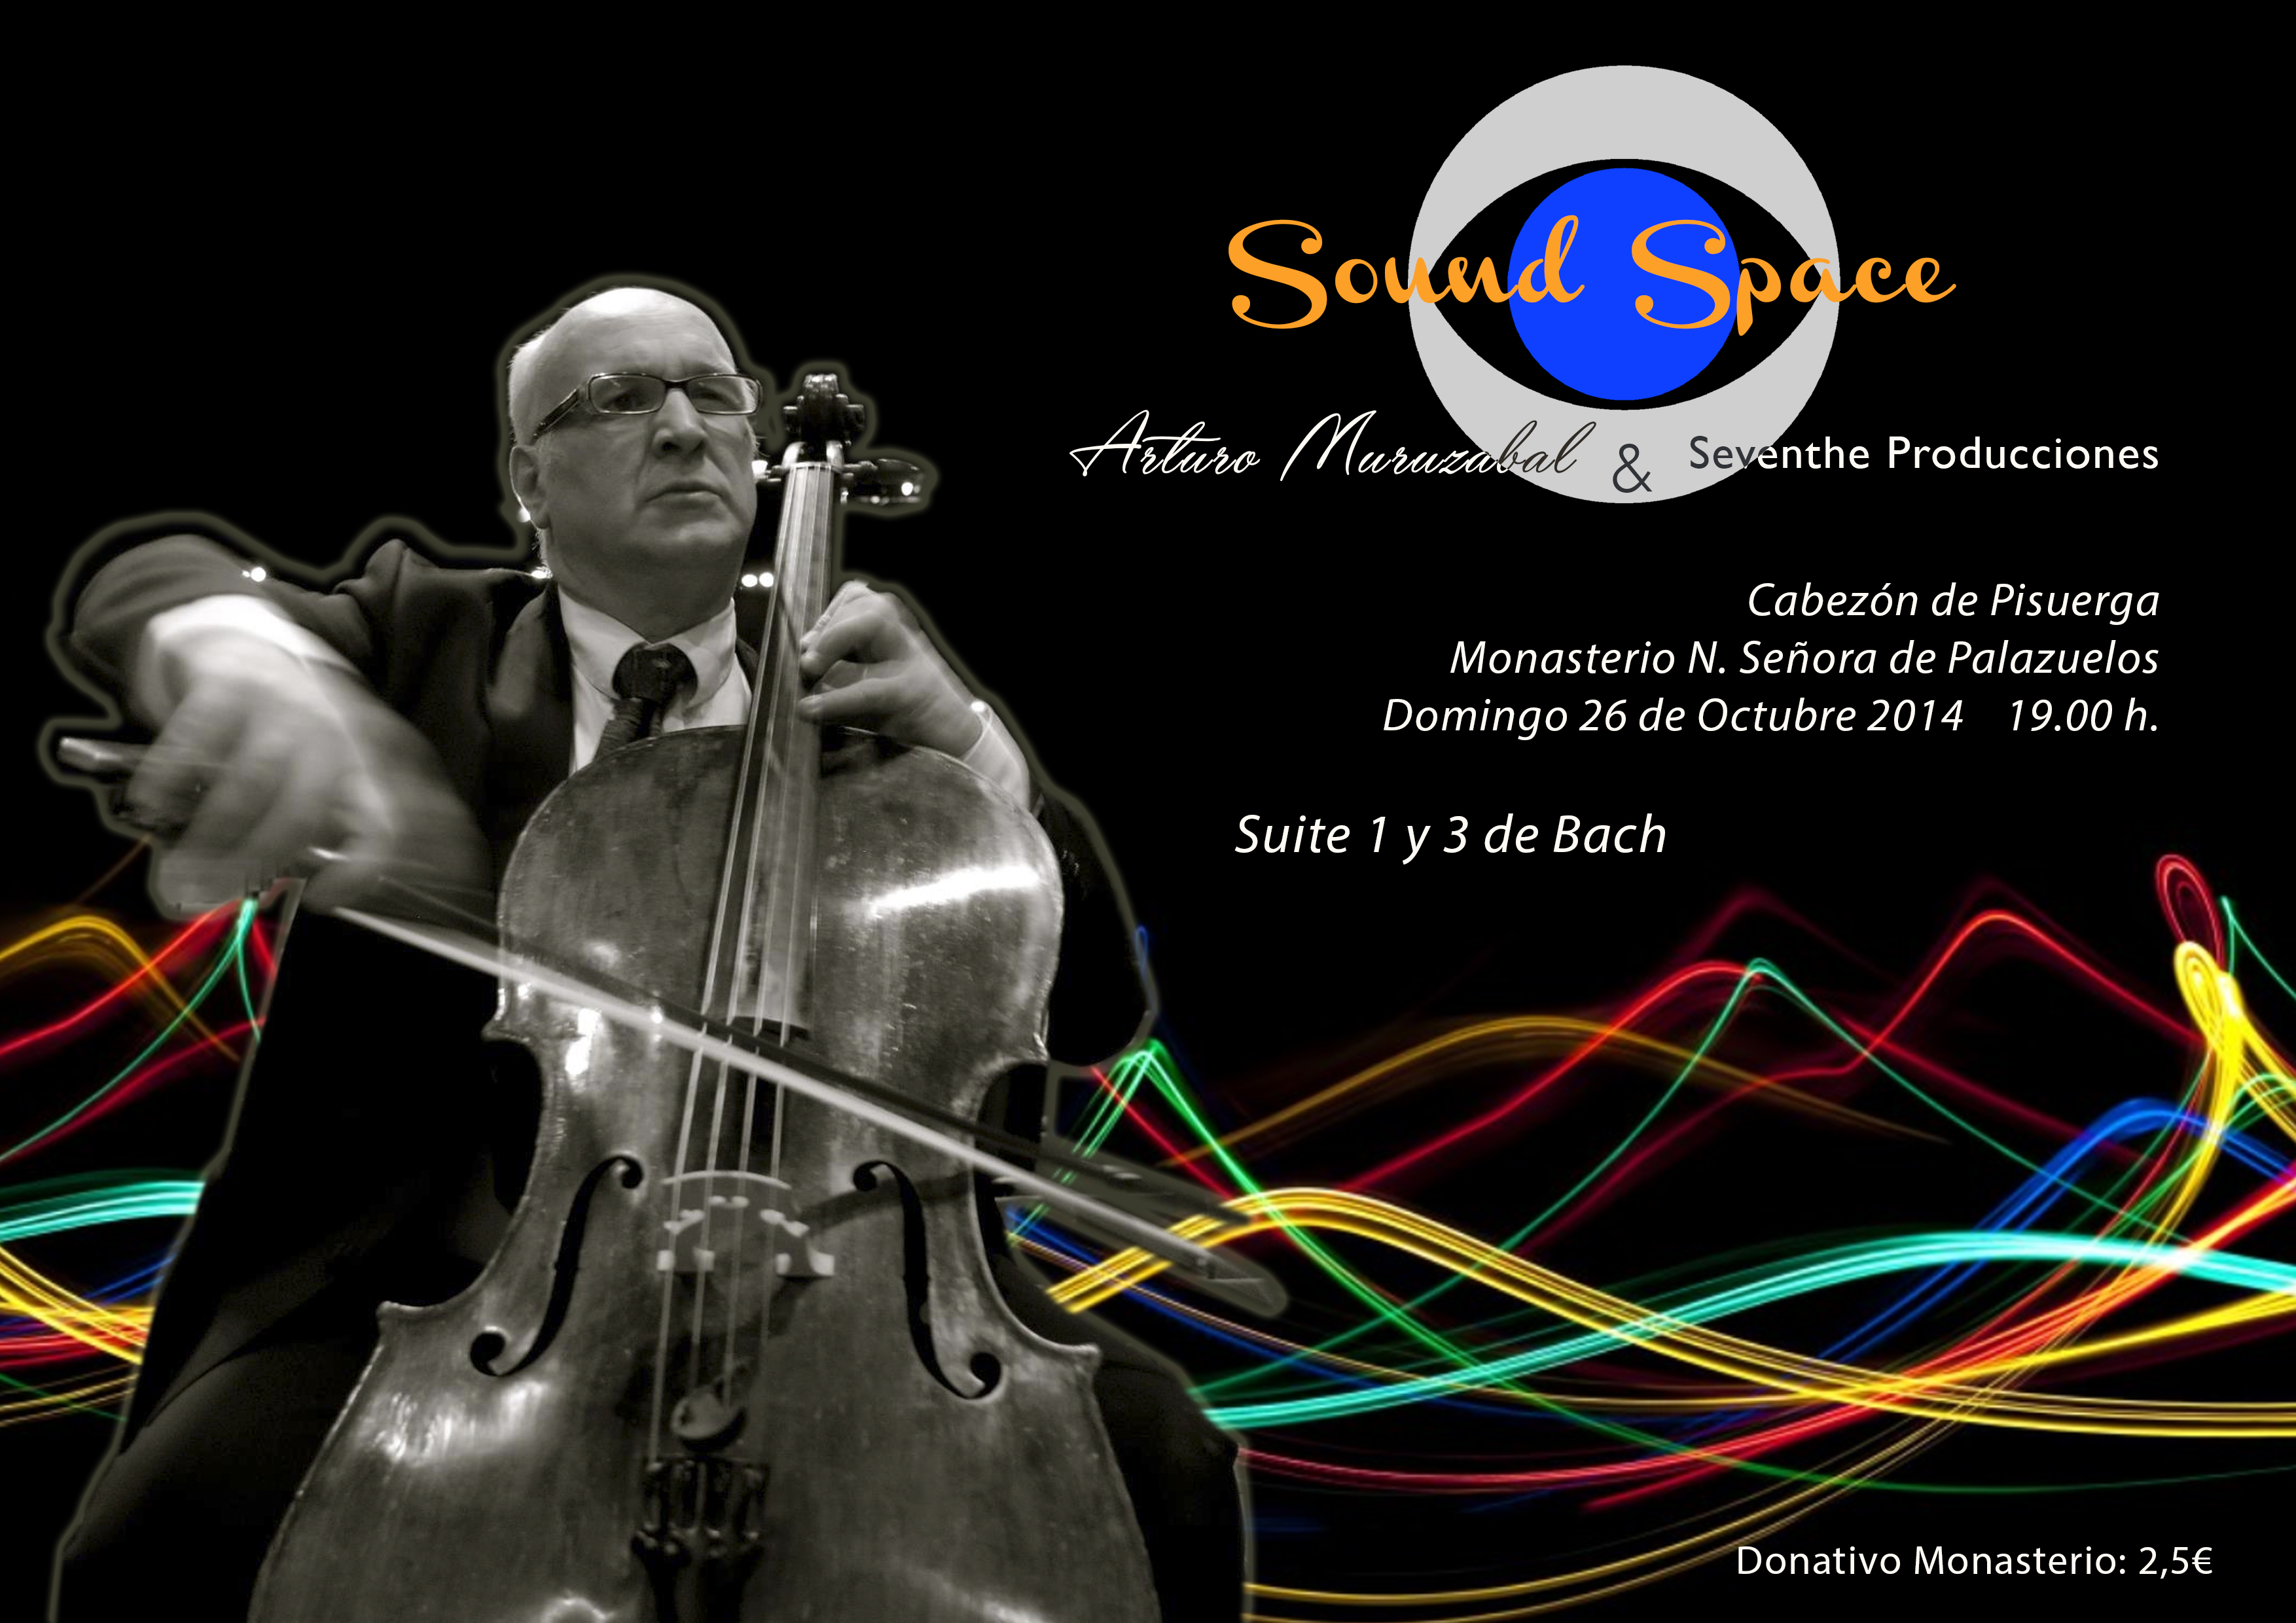 Concierto de la Asociación Músical San Nicolas, sábado 19 de octubre 20h, monasterio de Palazuelos